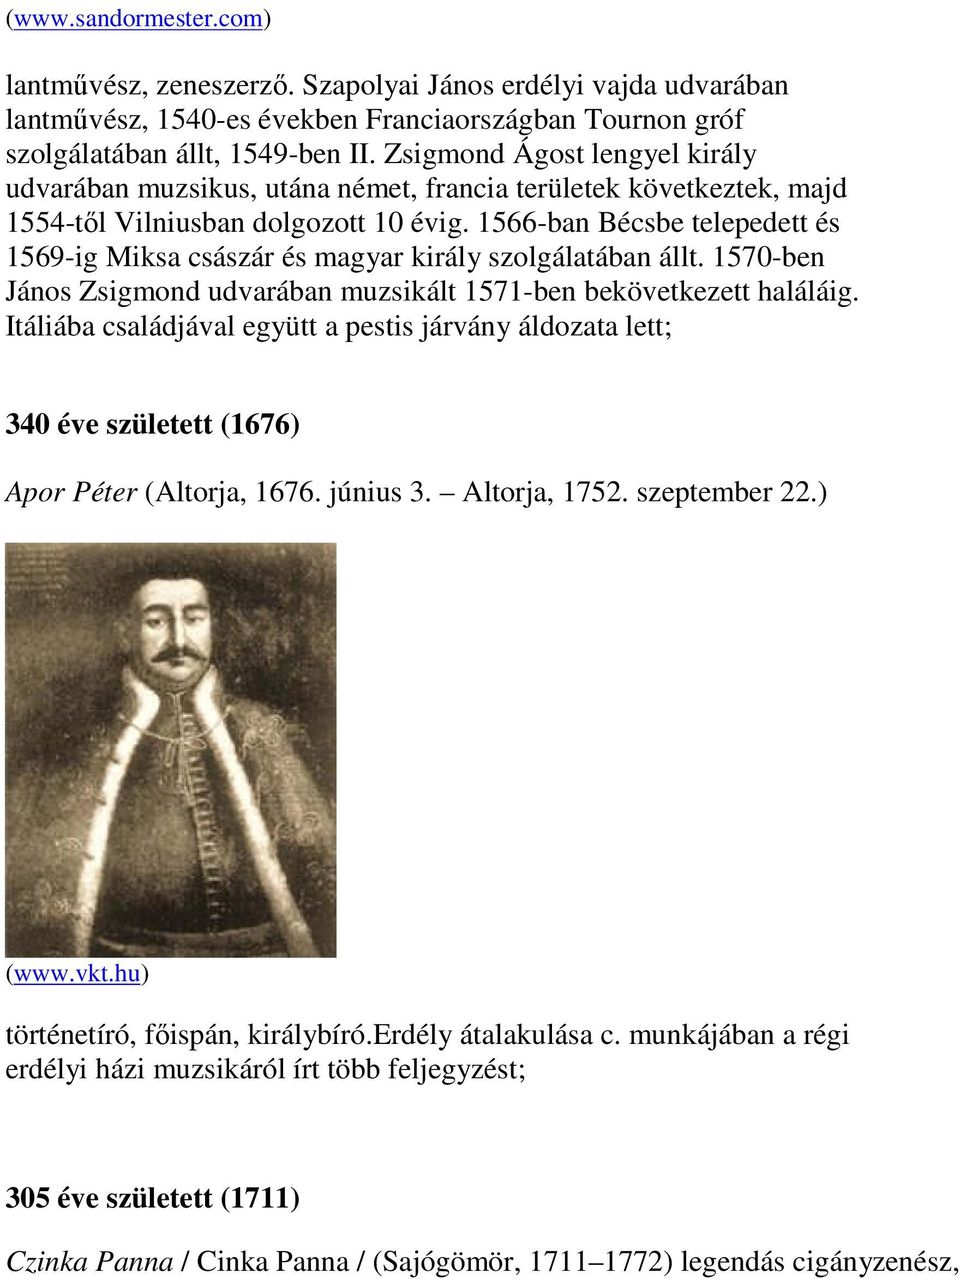 1566-ban Bécsbe telepedett és 1569-ig Miksa császár és magyar király szolgálatában állt. 1570-ben János Zsigmond udvarában muzsikált 1571-ben bekövetkezett haláláig.